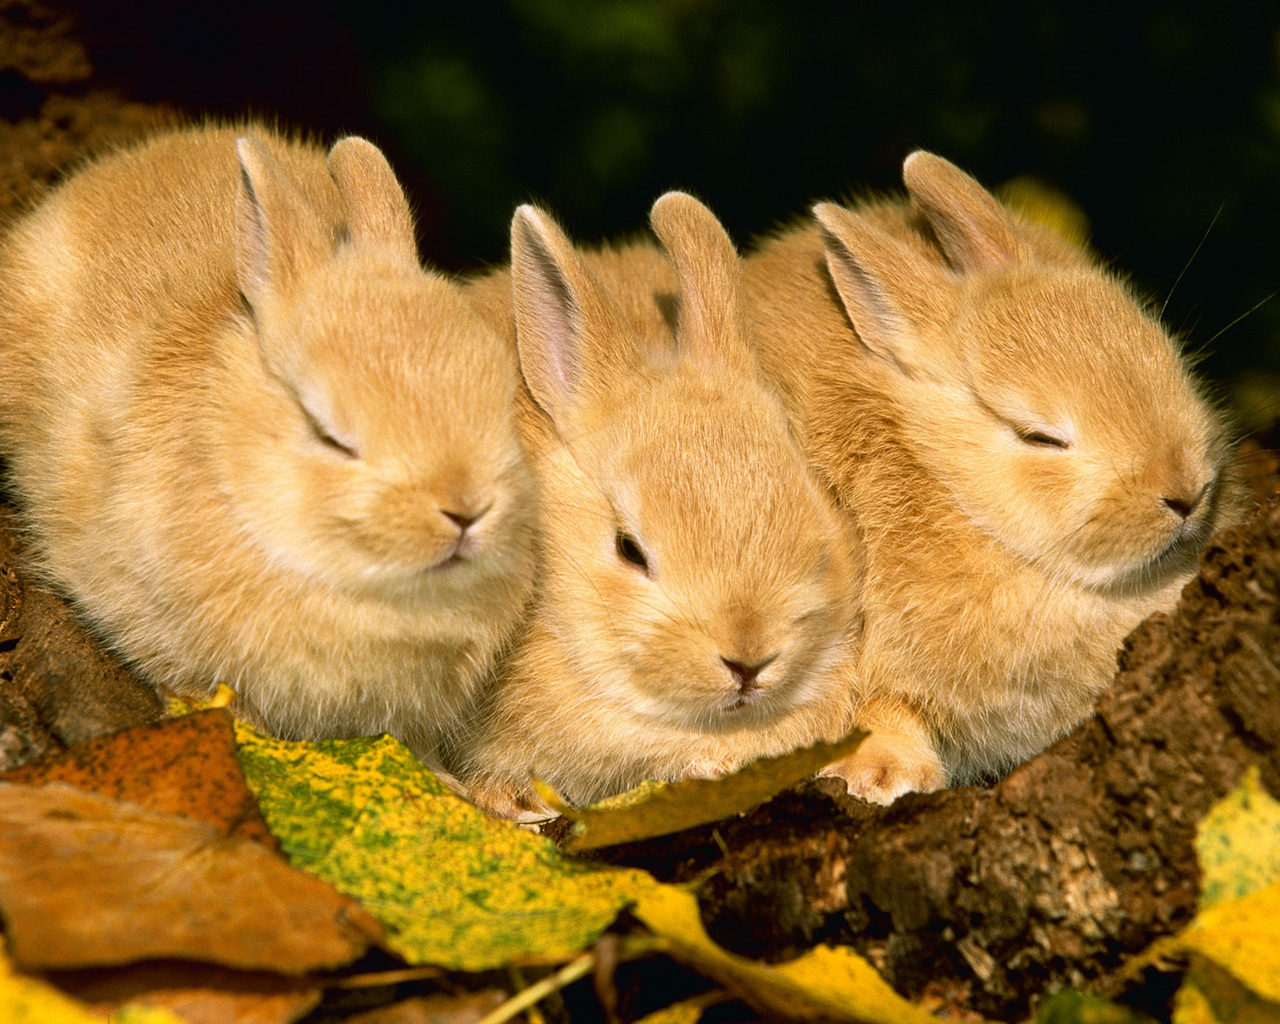 Three rabbits